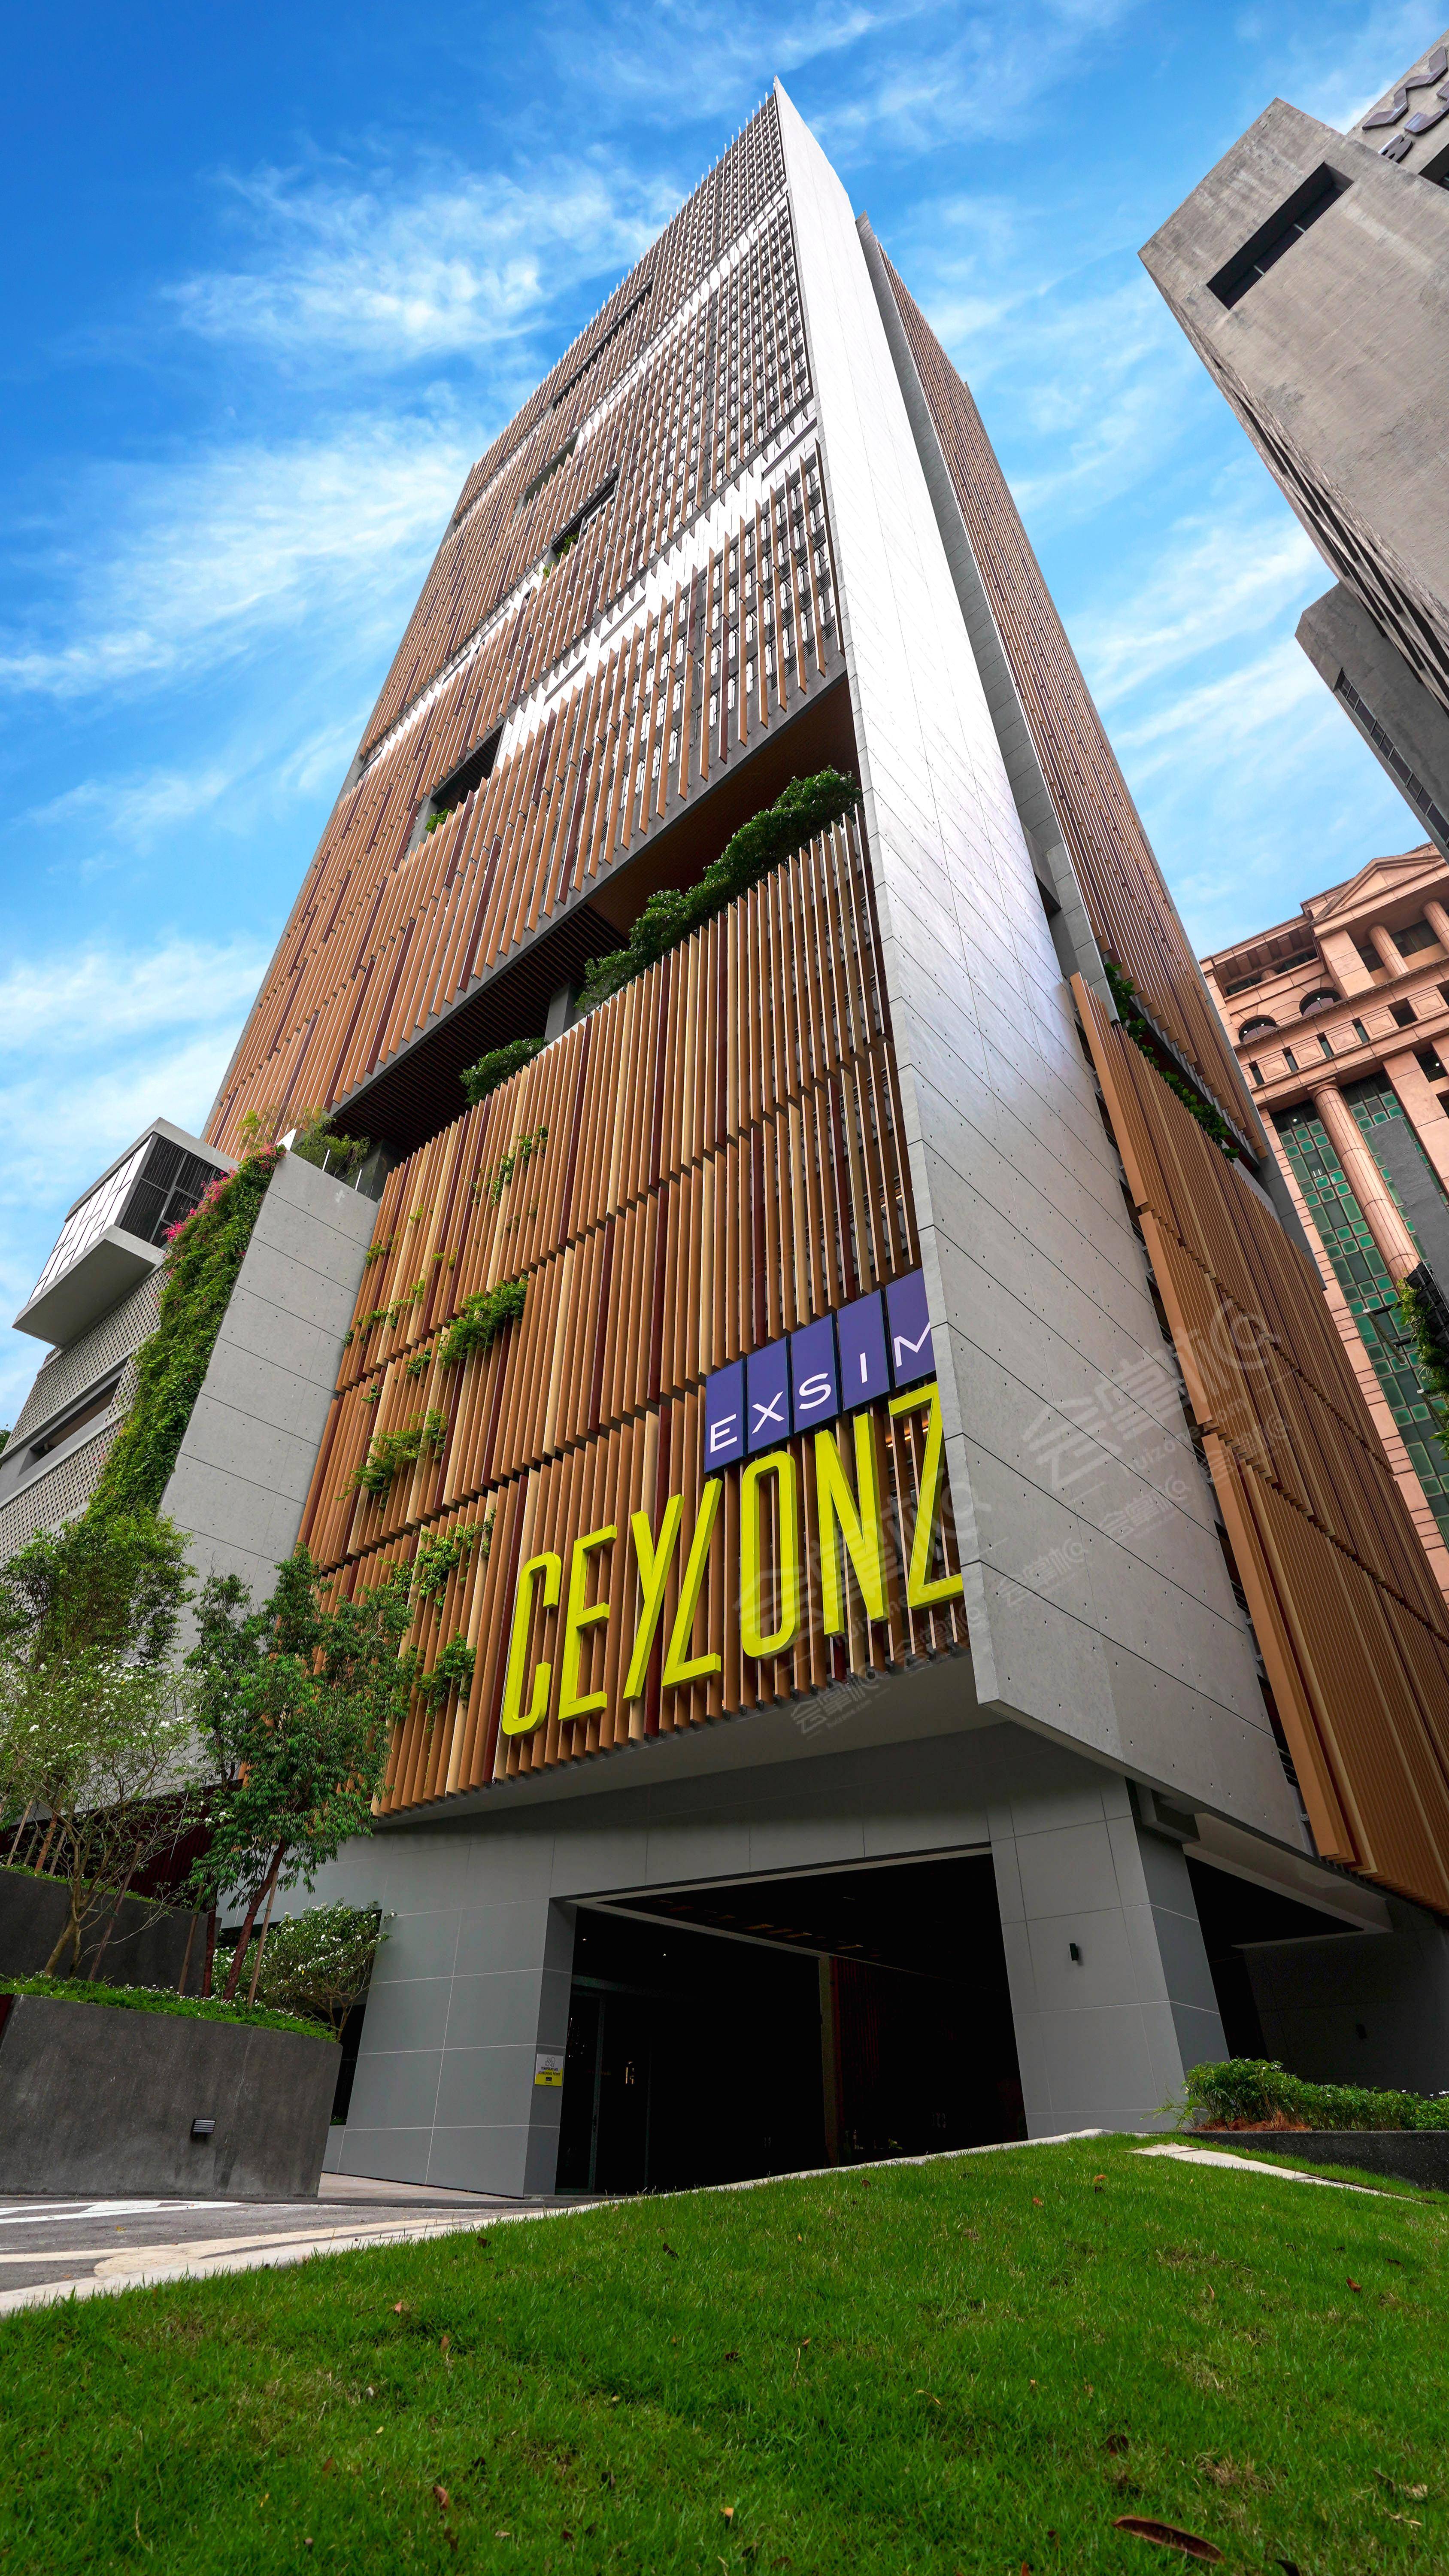 吉隆坡四星级酒店最大容纳200人的会议场地|吉隆坡锡兰生活套房公寓(Ceylonz Lifestyle Suites Kuala Lumpur)的价格与联系方式